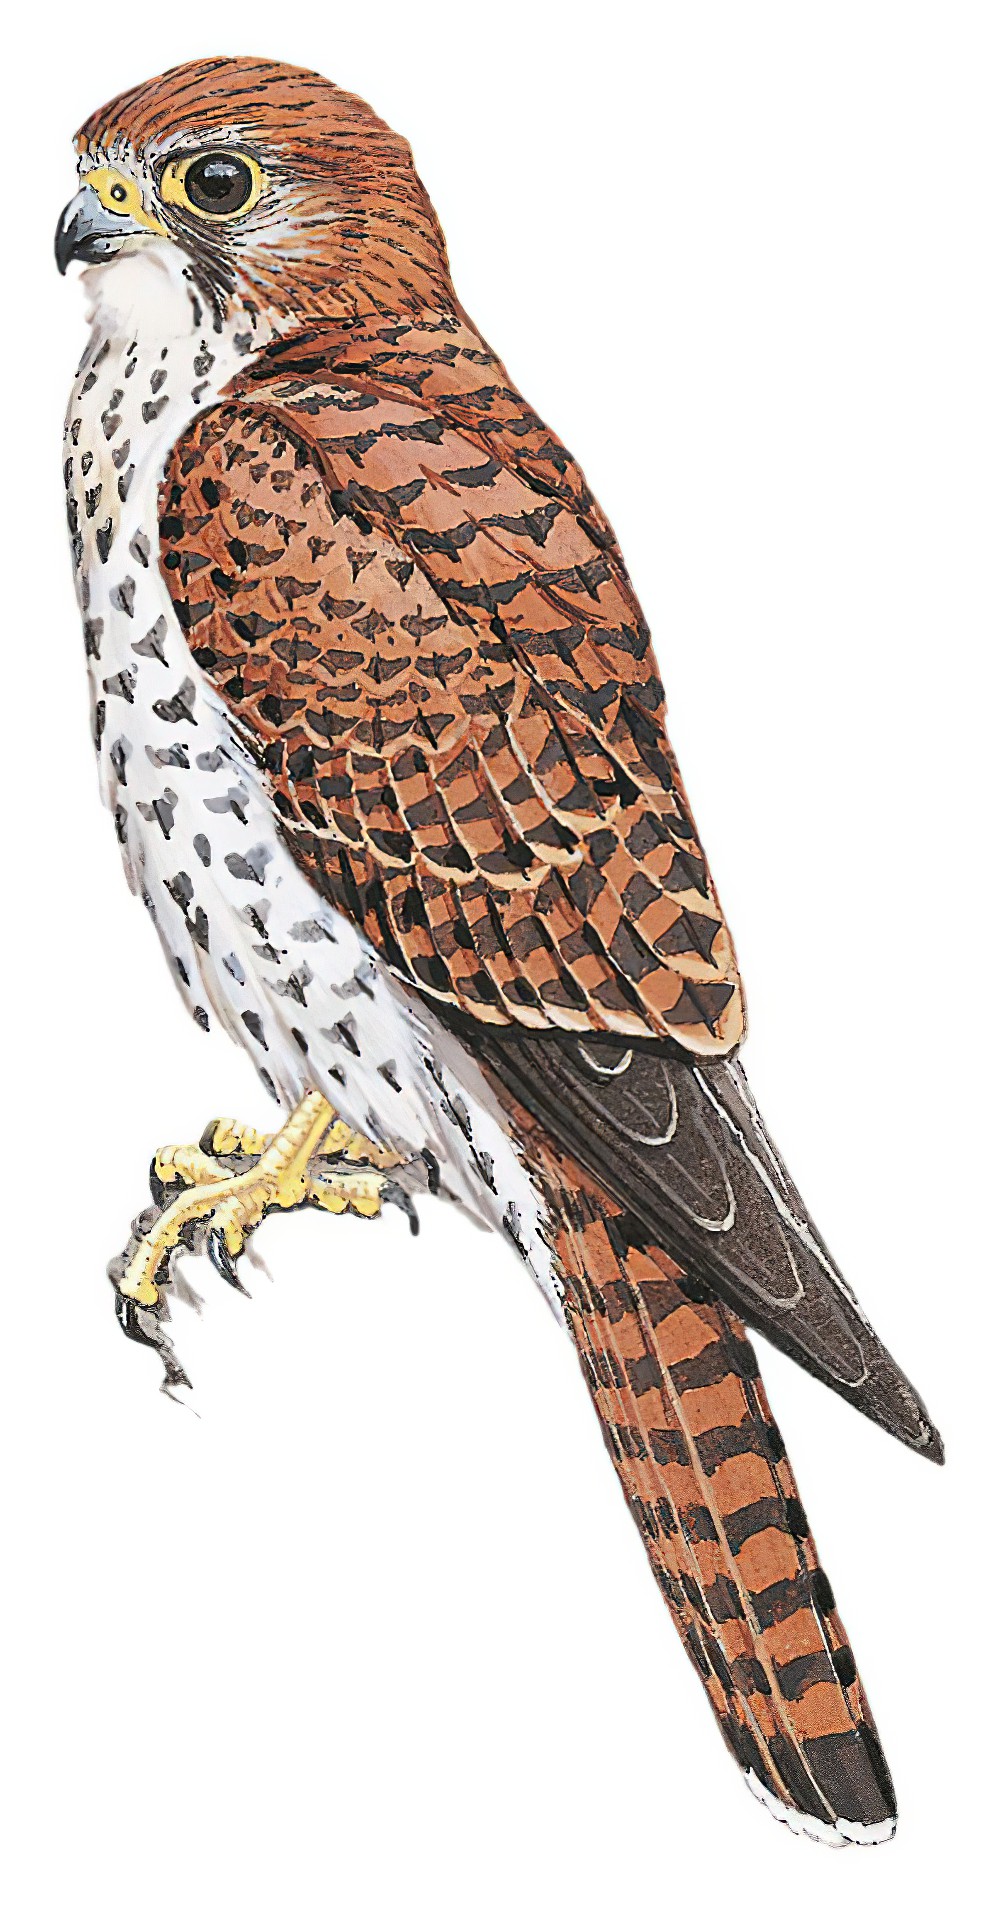 Mauritius Kestrel / Falco punctatus